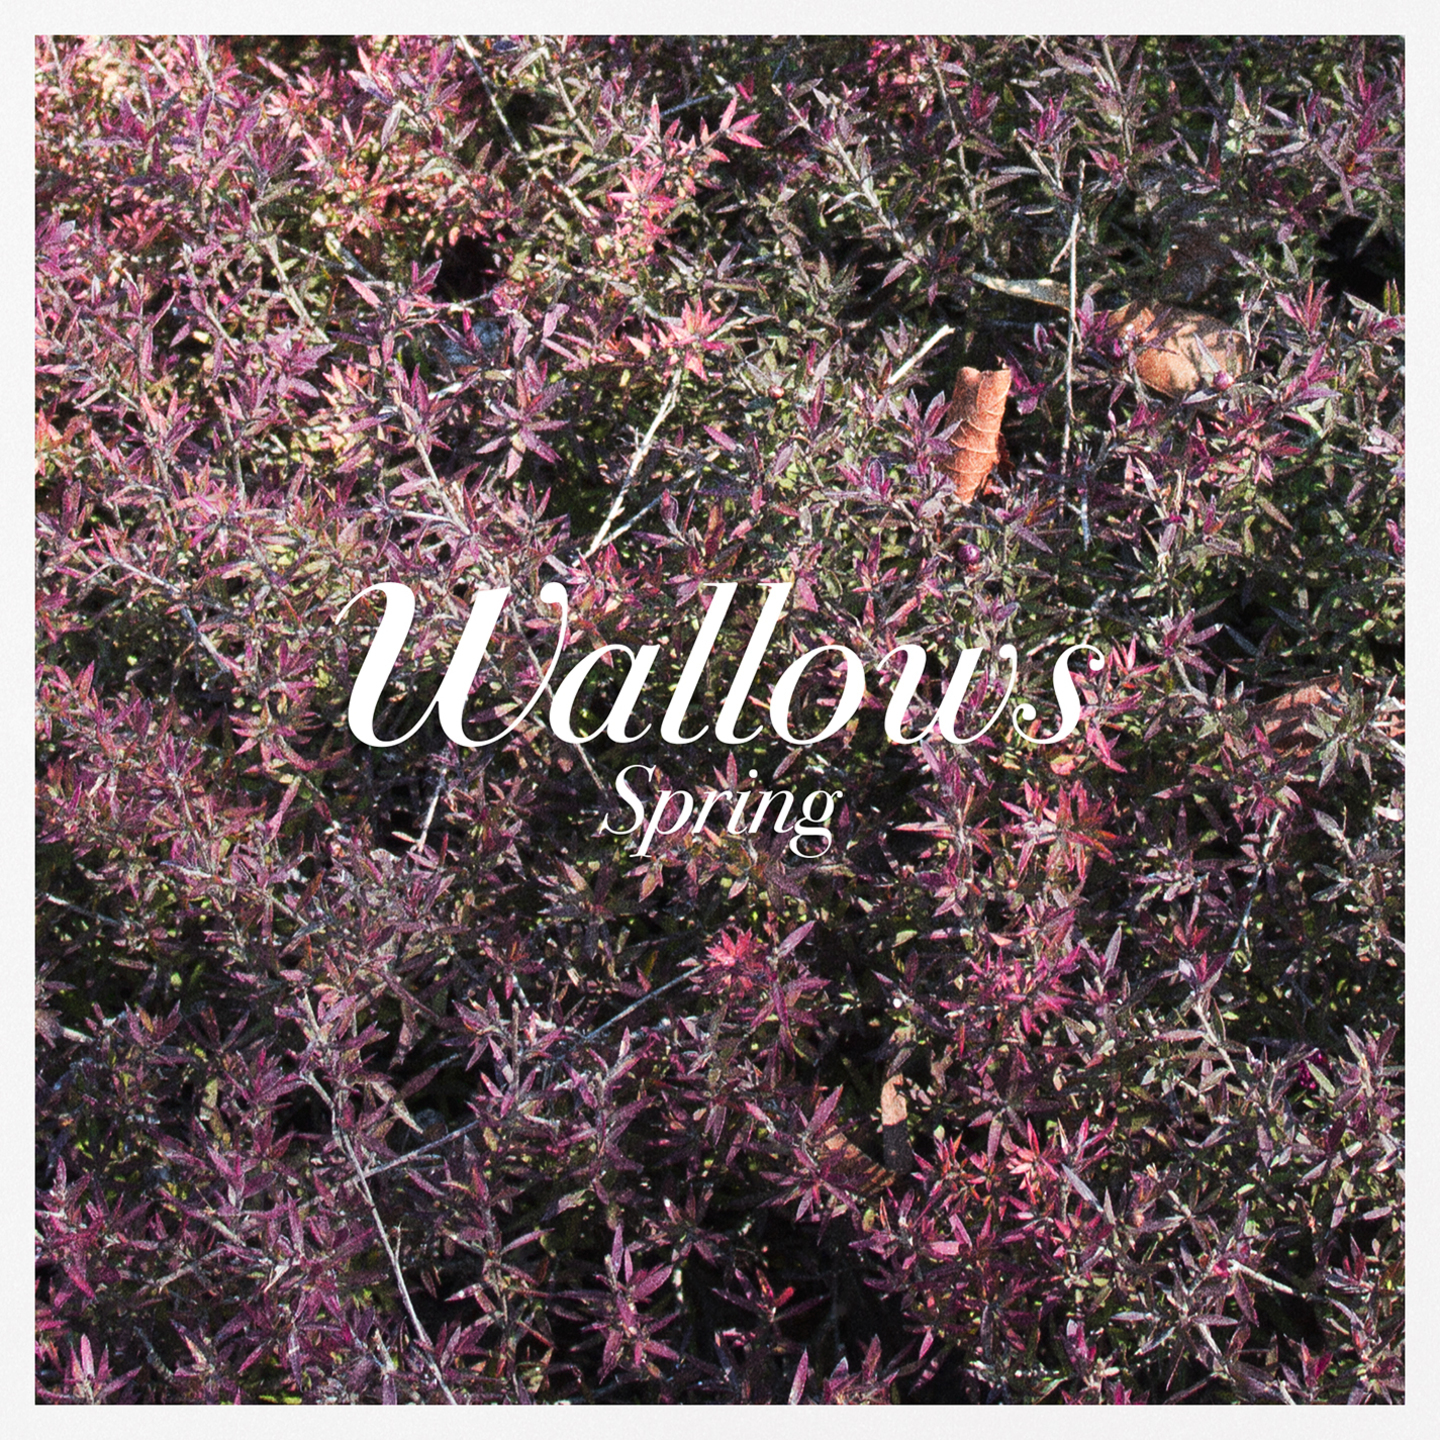 WALLOWS - Spring 12EP Colour Vinyl